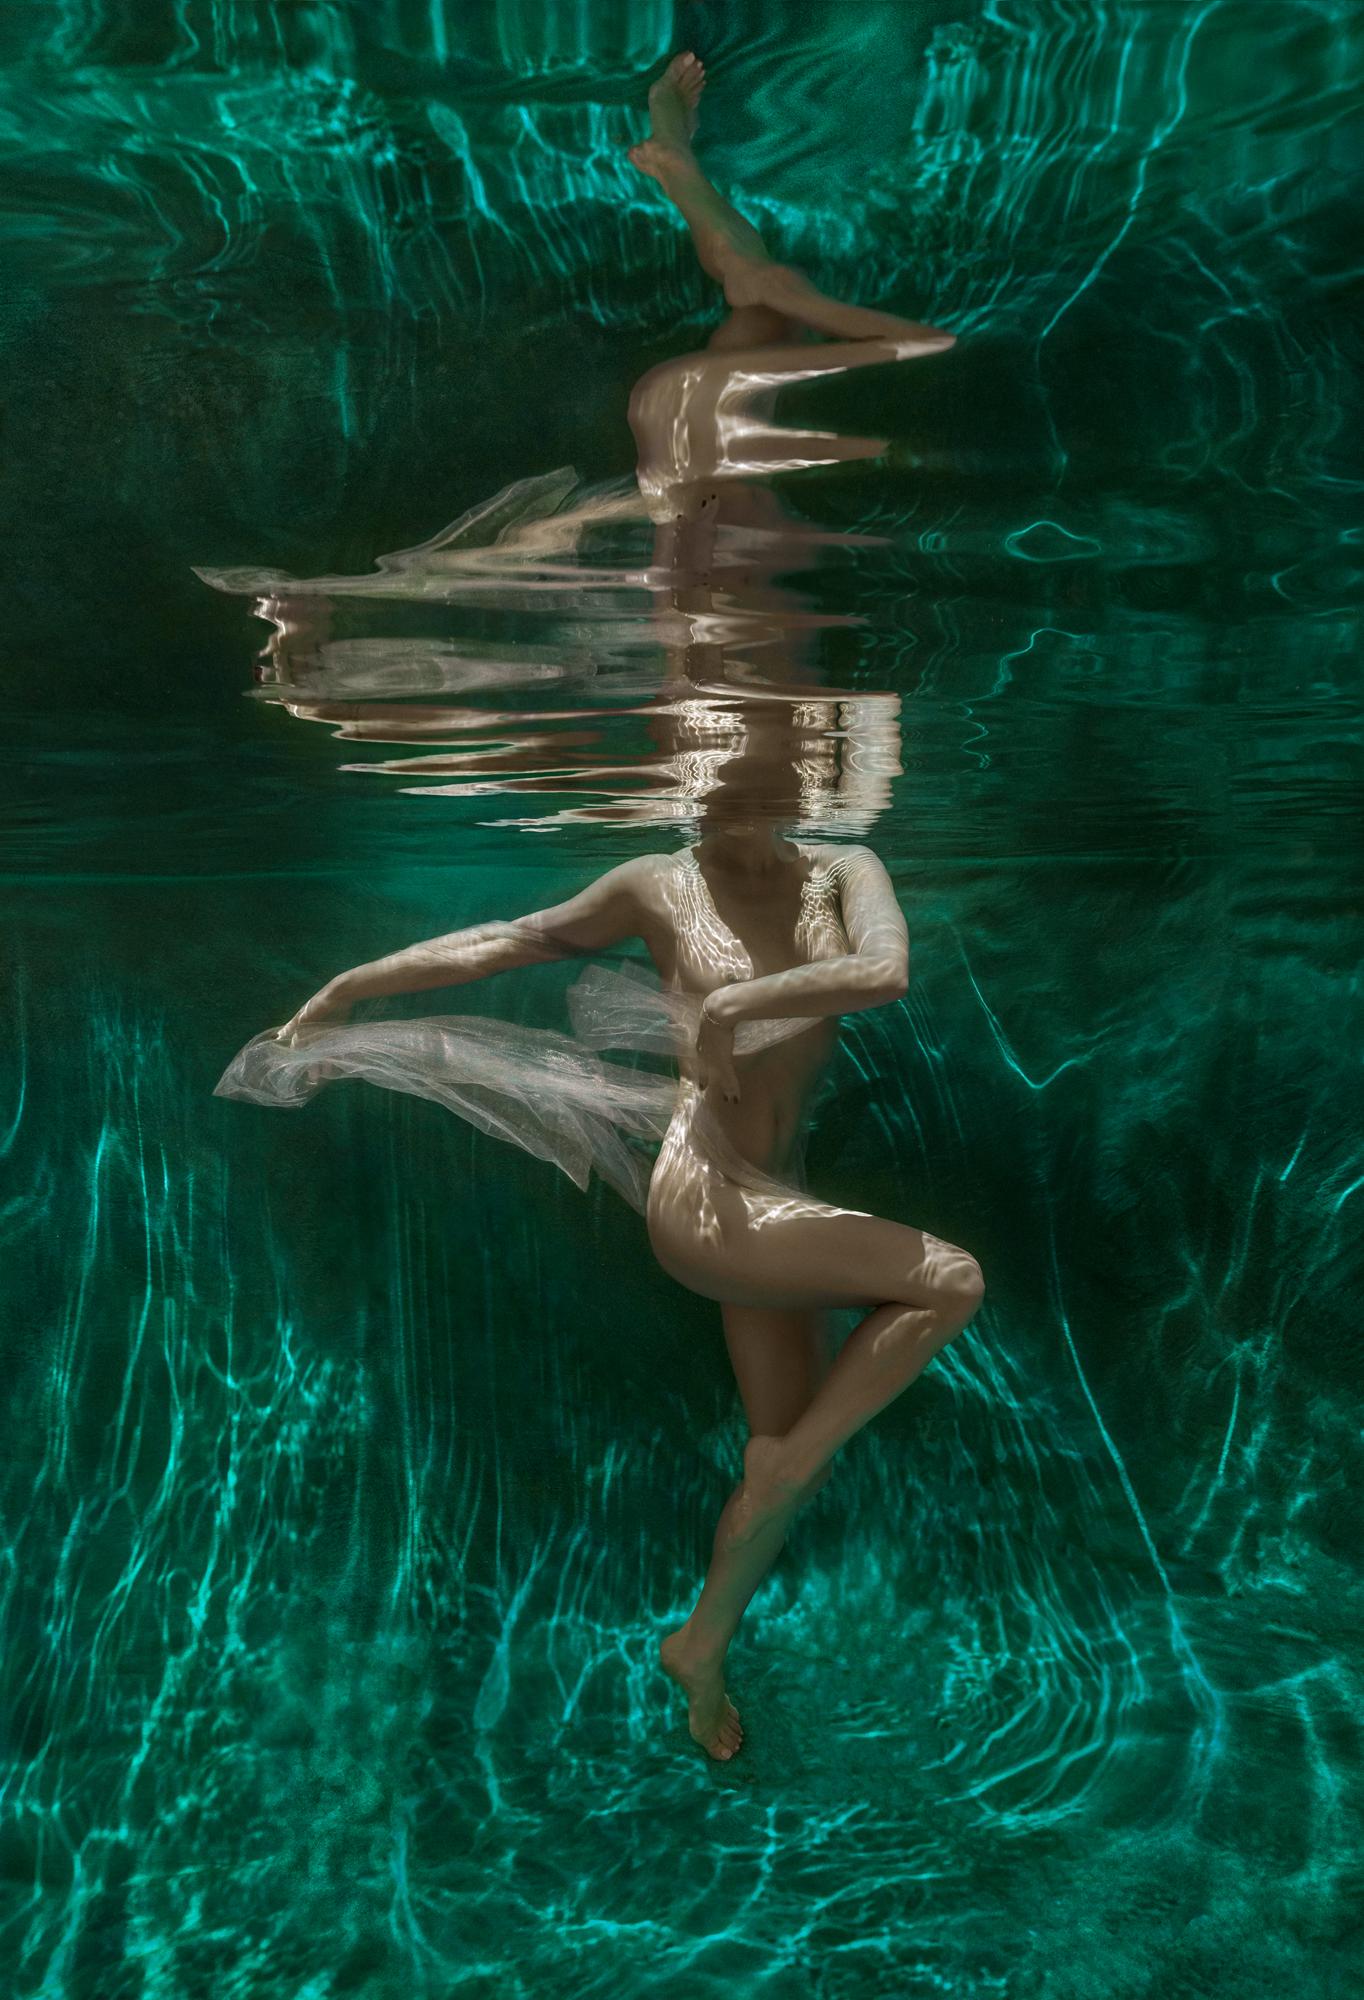 Alex Sher Nude Photograph – Мalachit-Höhle - Unterwasserfotografie - Pigmentdruck 51" x 35"